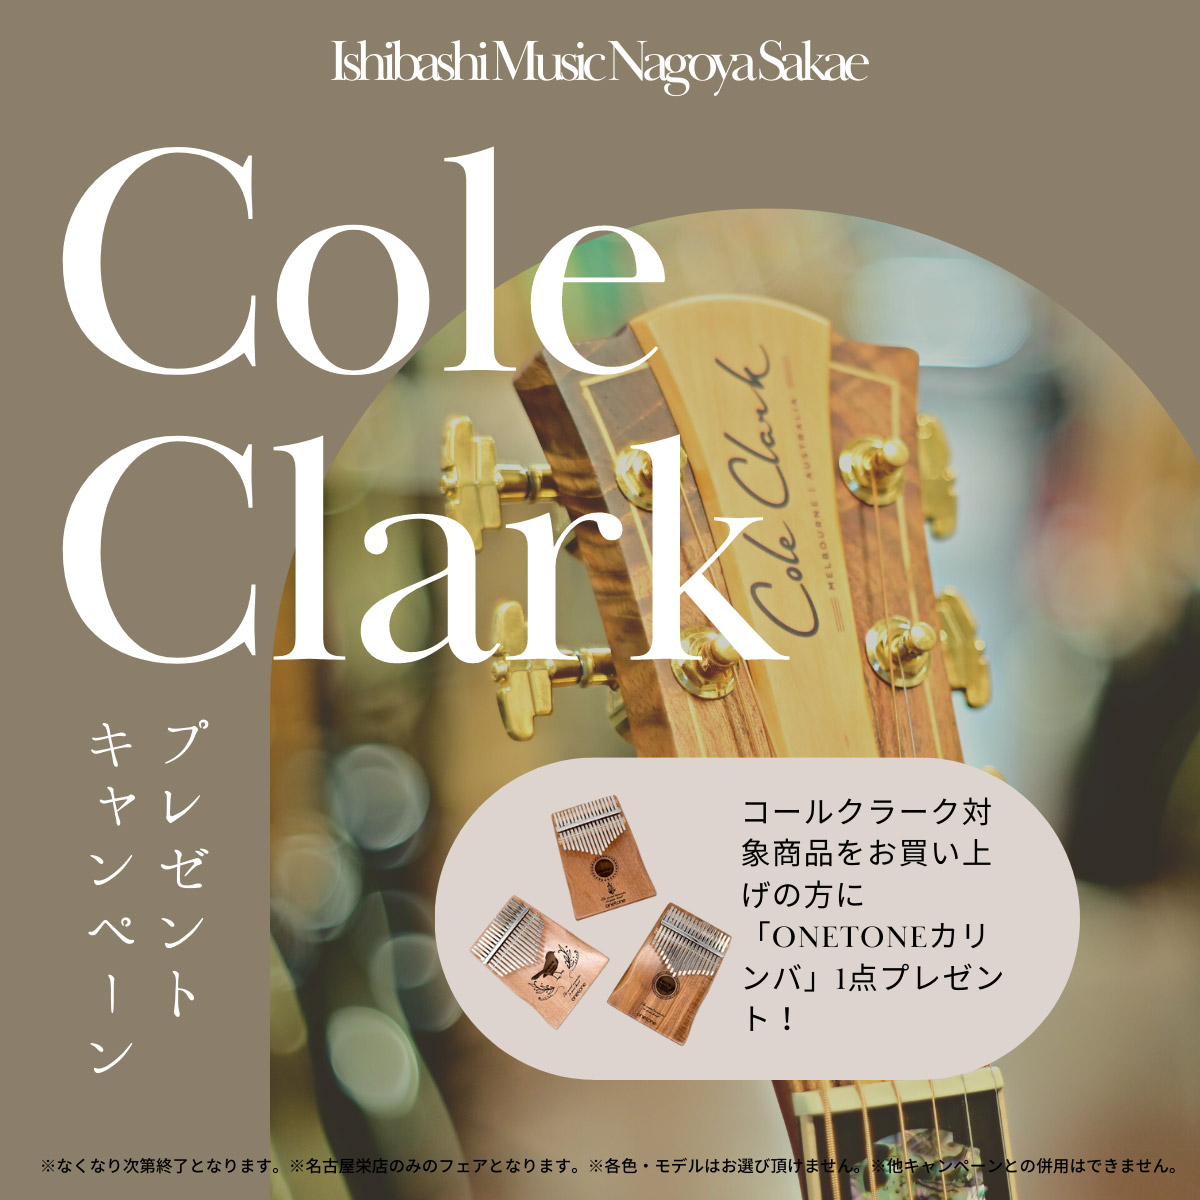 Cole Clark Present Campaign